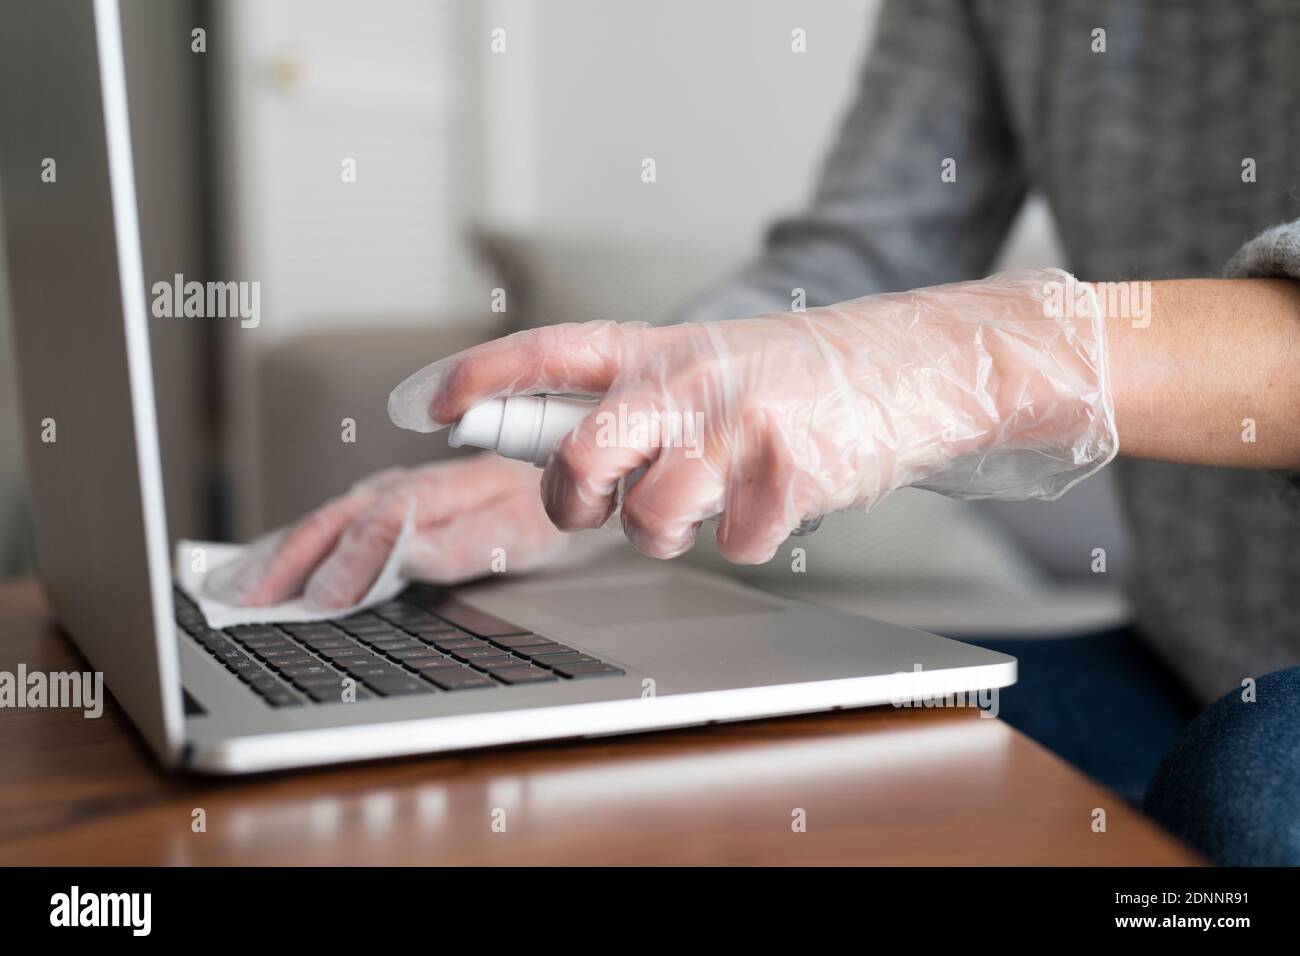 Femme désinfectant ordinateur portable Banque D'Images